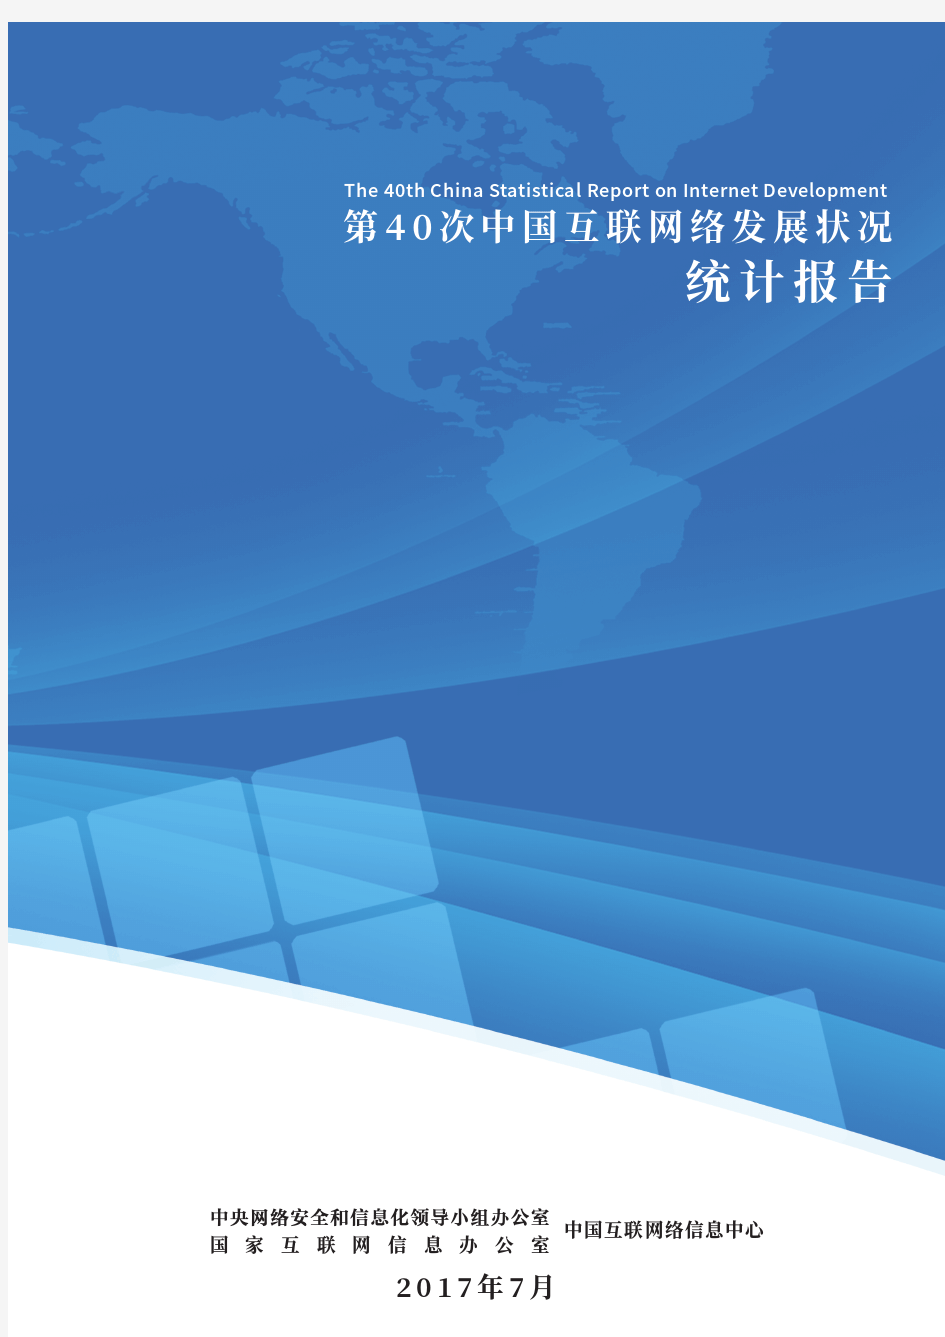 第40次《中国互联网络发展状况统计报告》